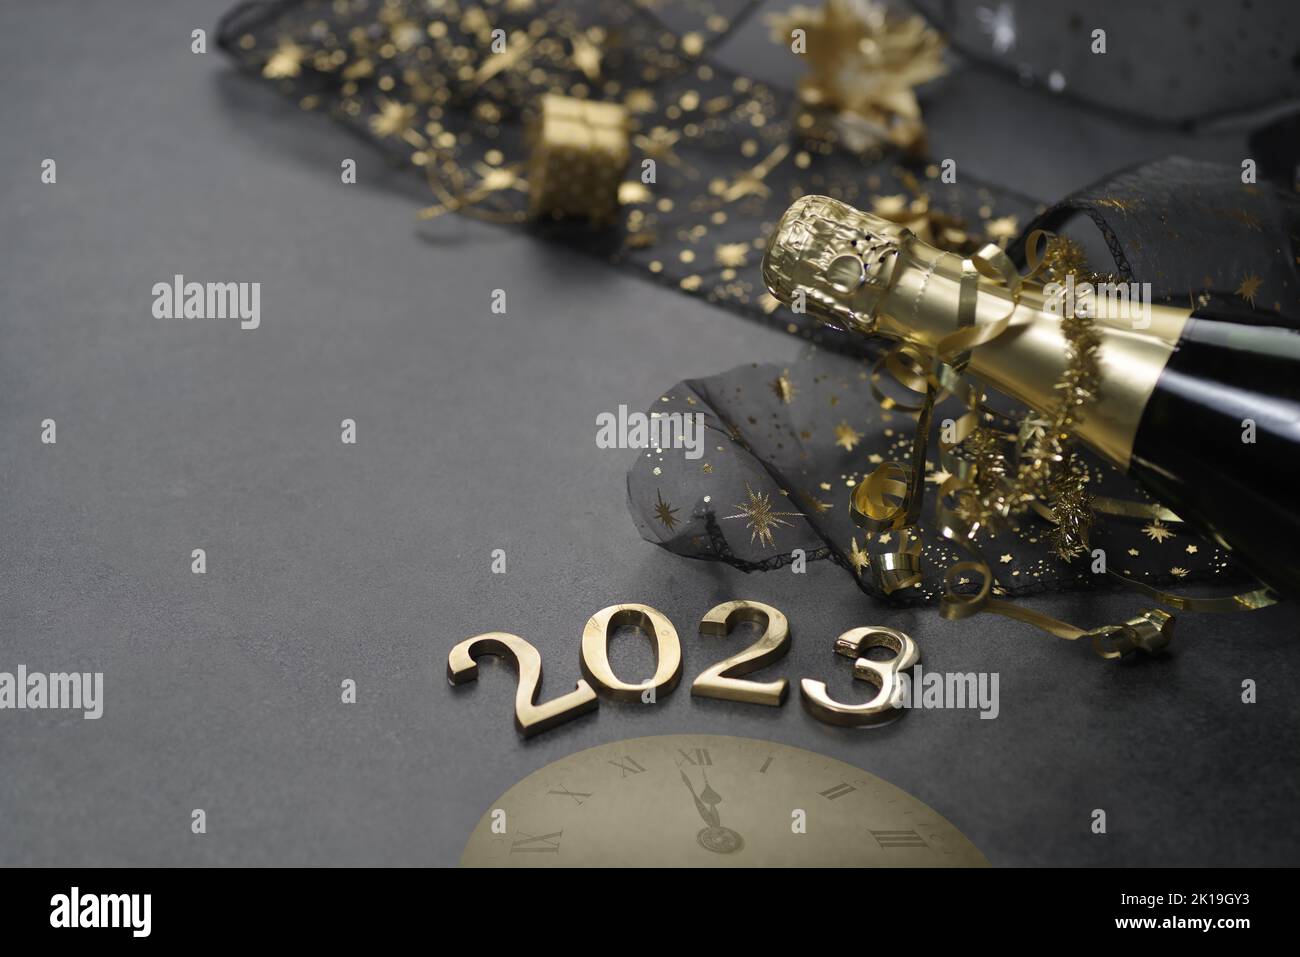 Concetto di Capodanno, con luce brillante e bottiglia di champagne, sfondo bokeh dorato Foto Stock